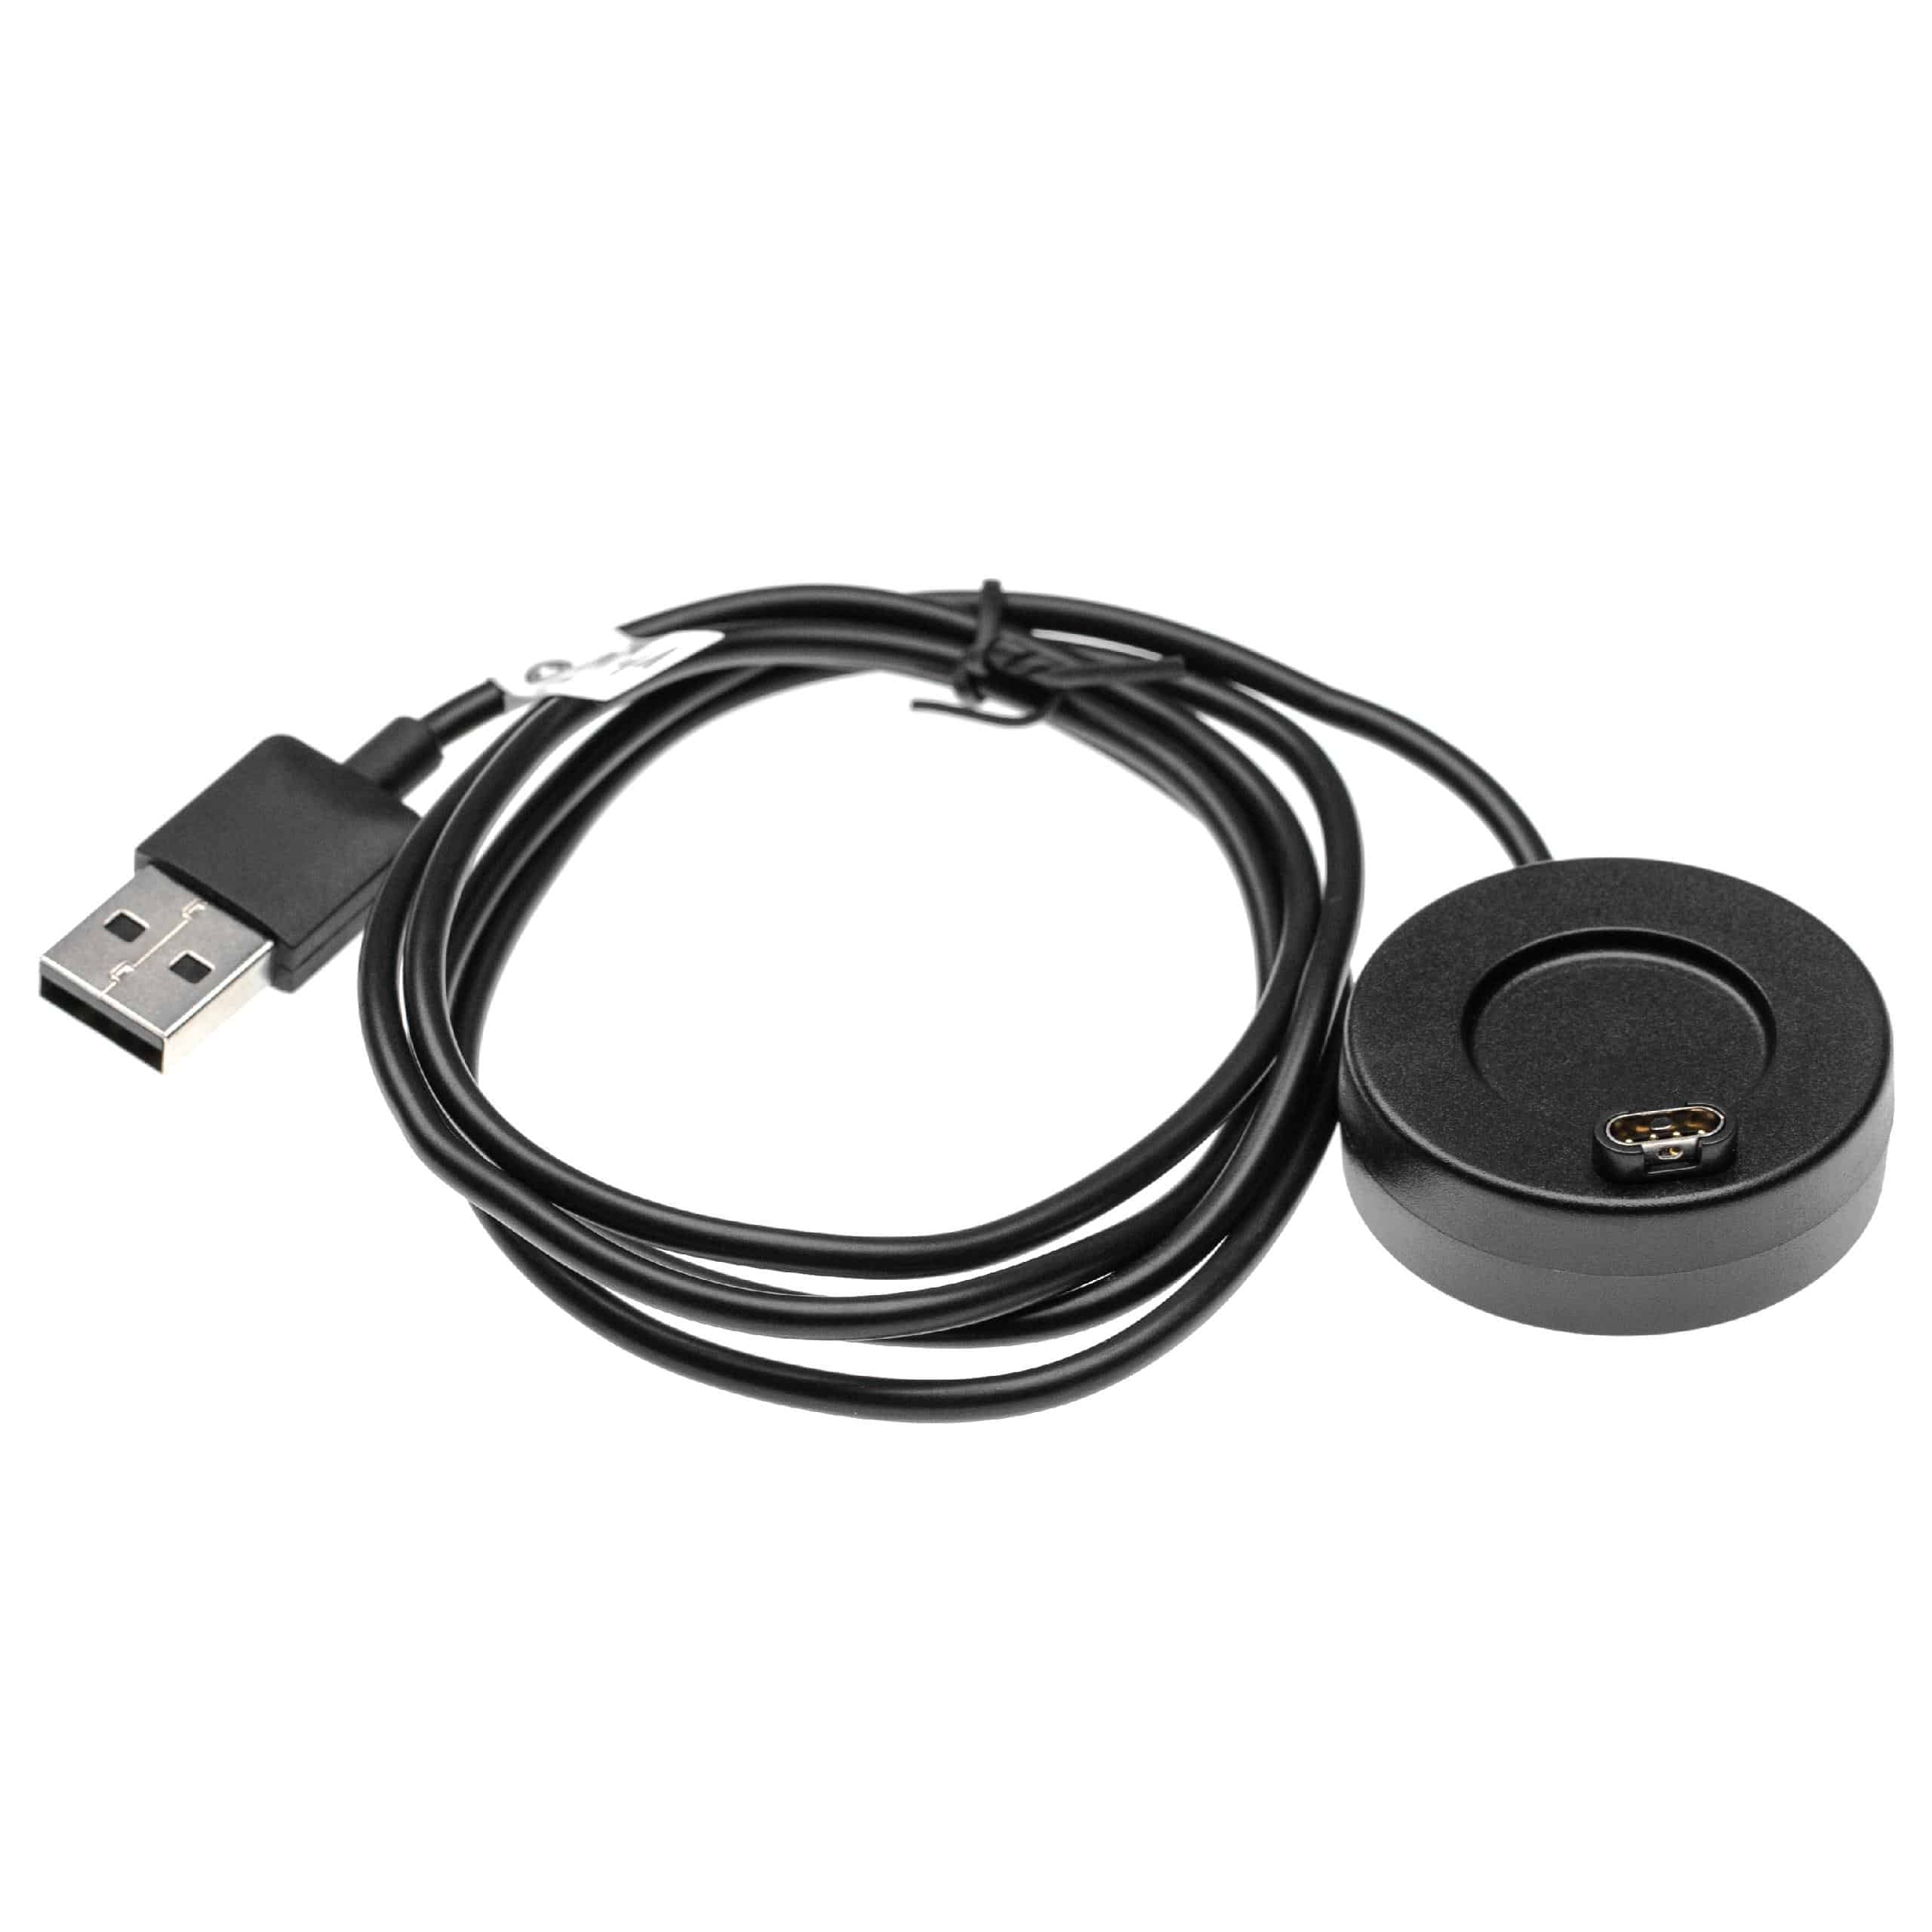 Cable de carga USB 2.0-A para smartwatch Garmin Vivoactive 3 - negro 100 cm